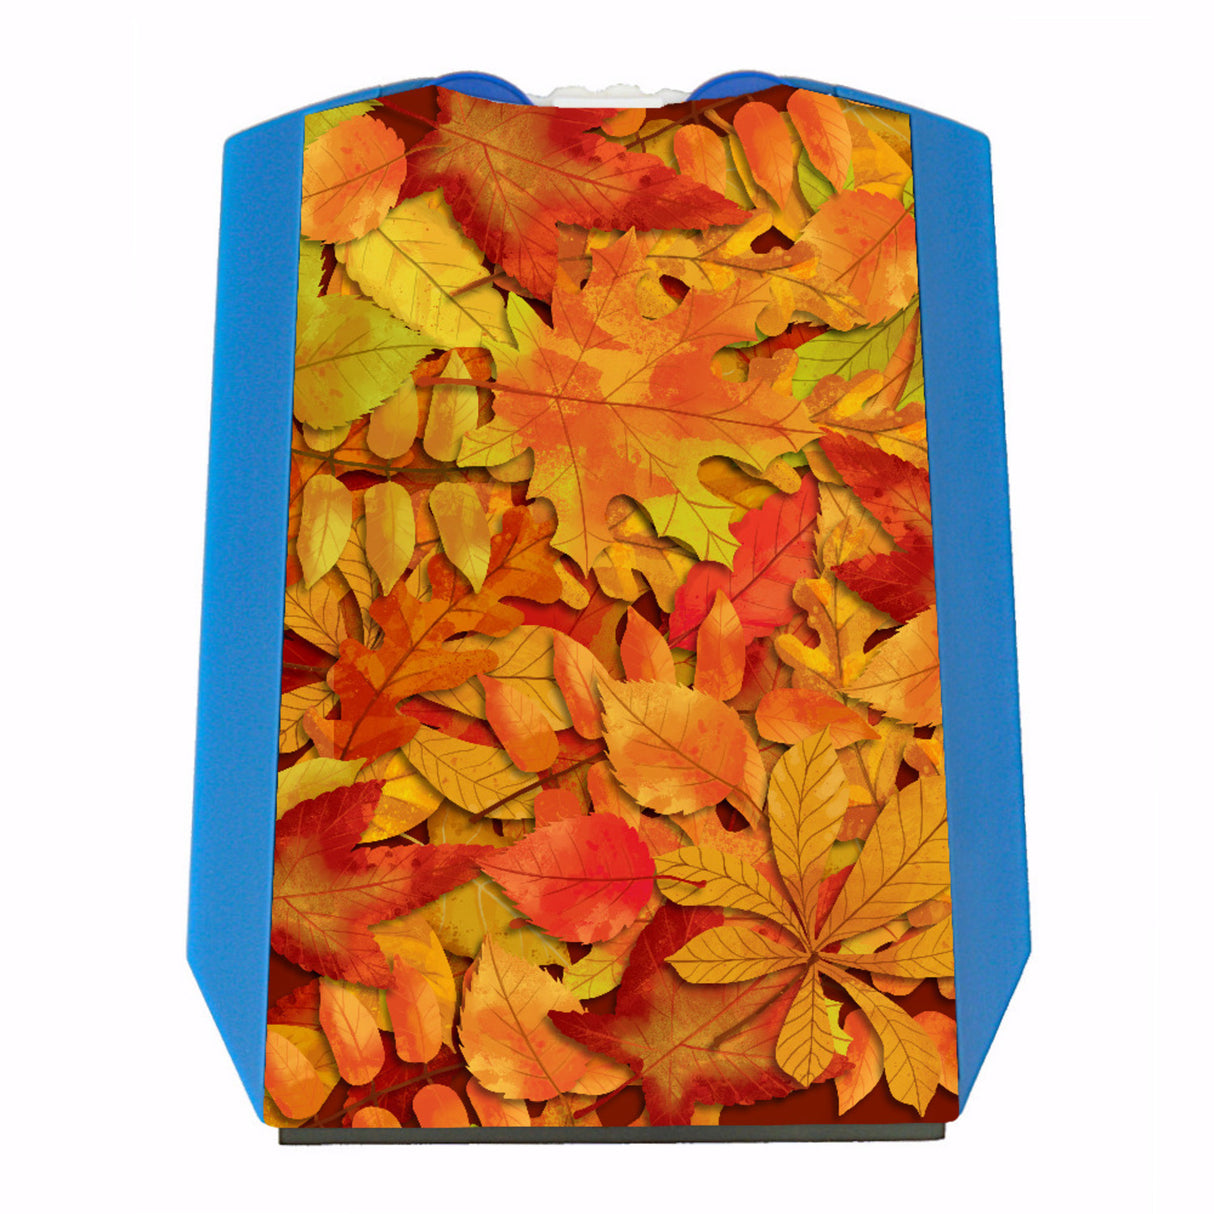 Herbstblätter Laubhaufen Parkscheibe mit zwei Einkaufswagenchips